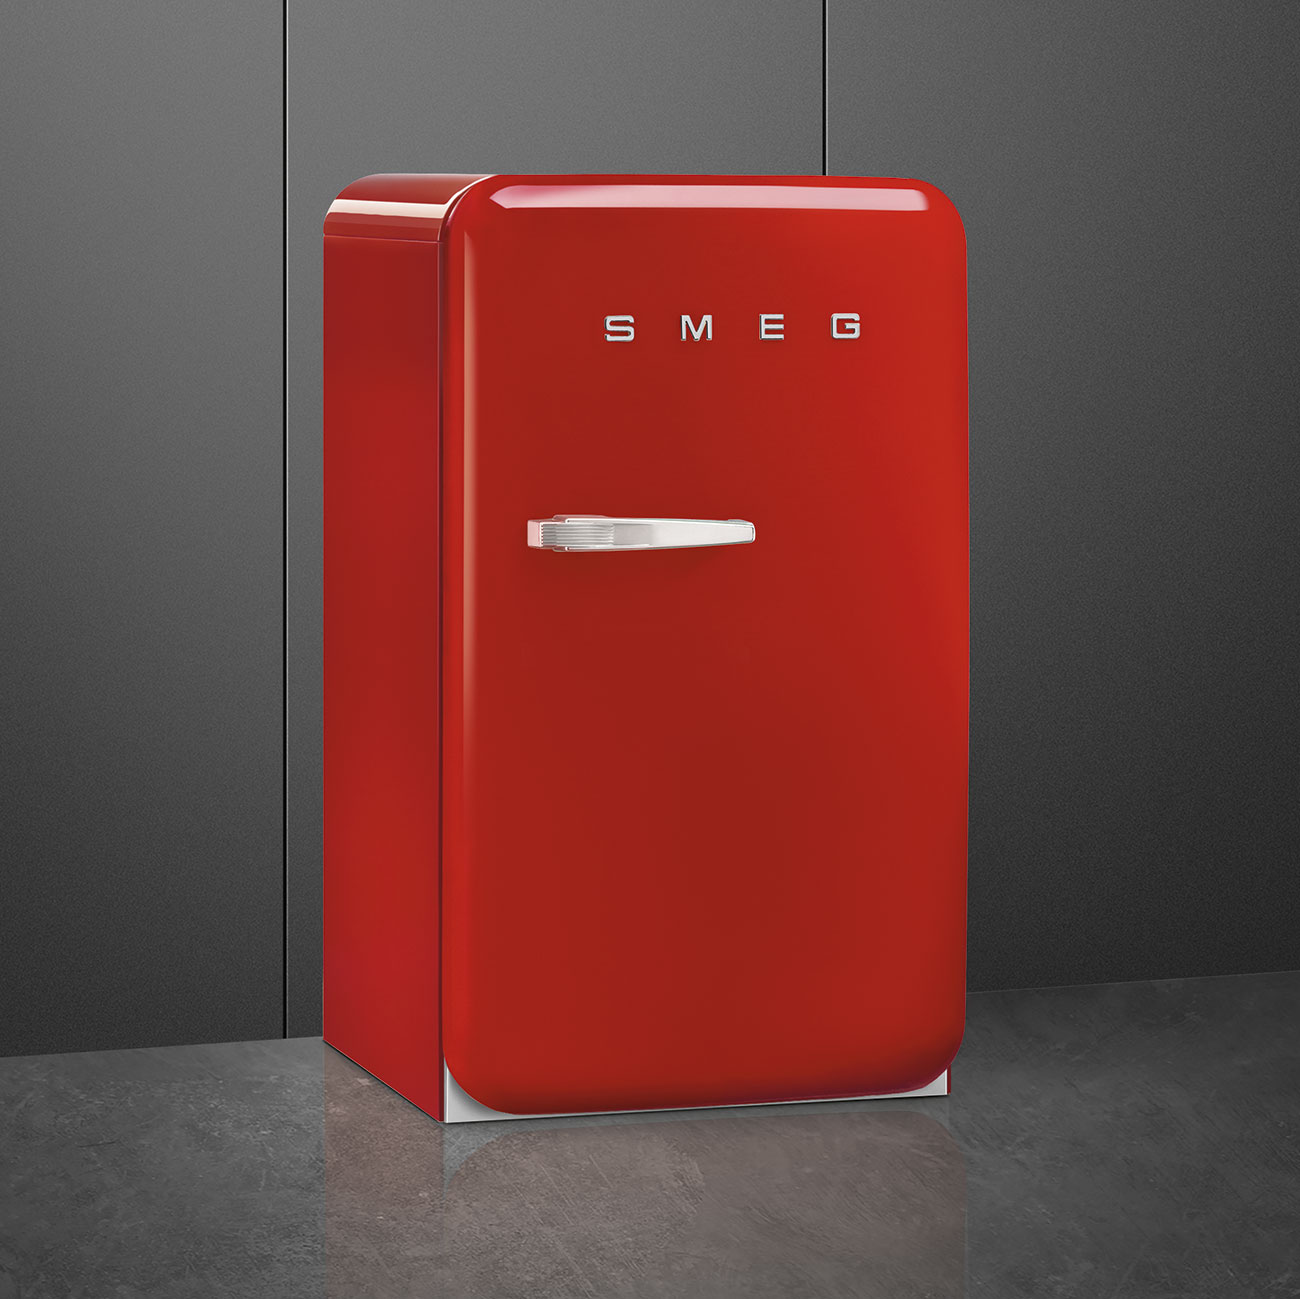 Red refrigerator - Smeg_3